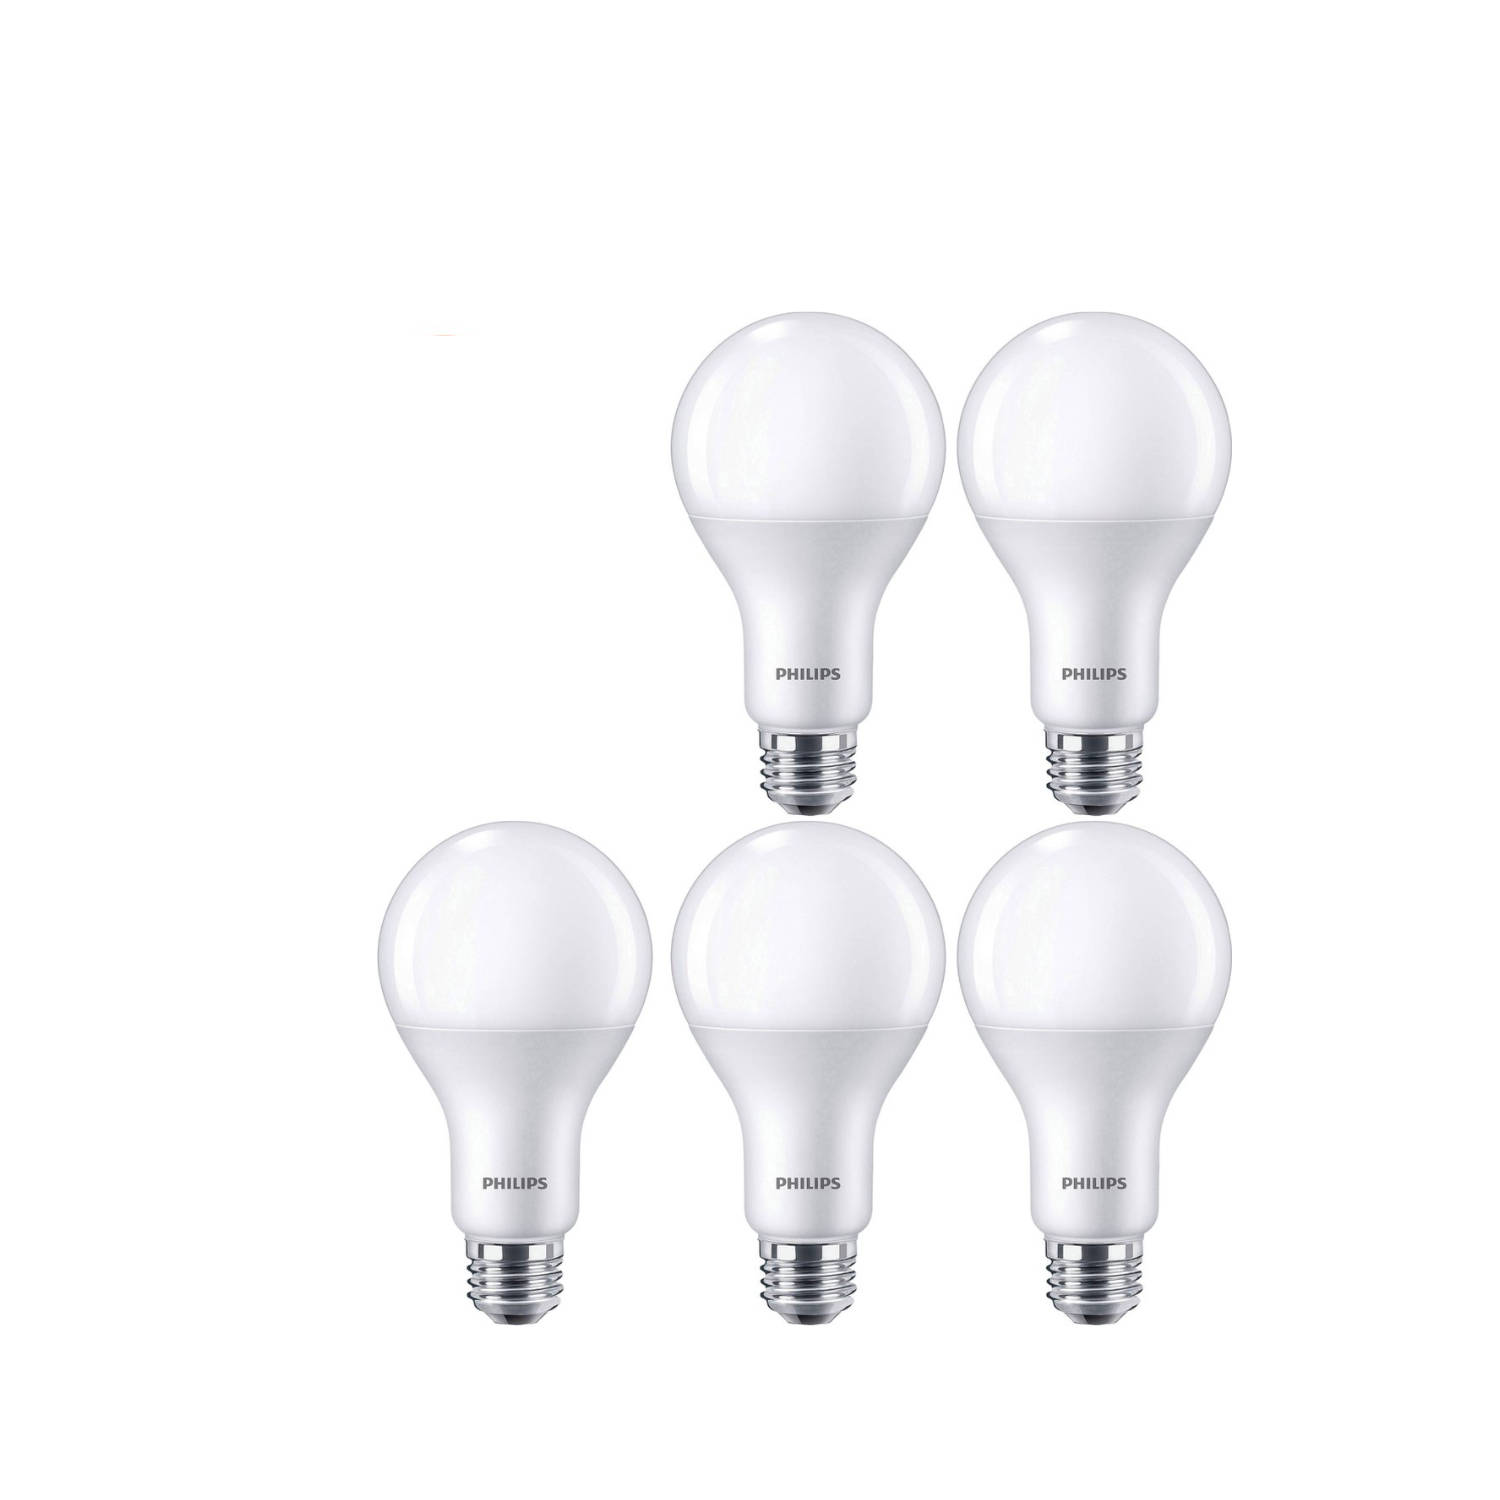 Philips Warmglow Led Lampen E27 - Dimbaar - 12w/75w - 1055 Lumen - Warm Wit Licht - 5 X Led Lamp